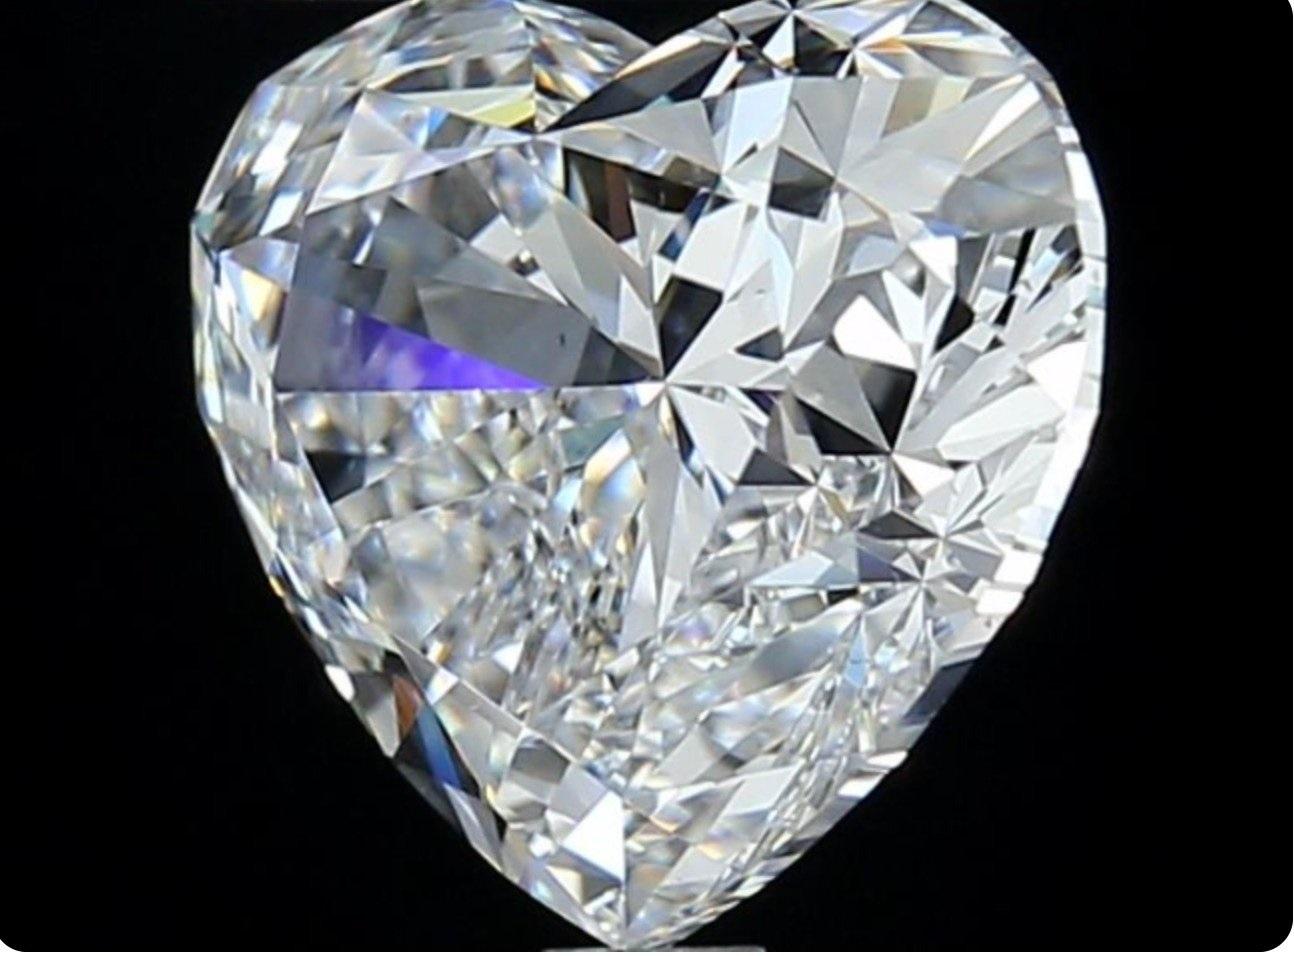 Coupe idéale et belle coupe rare  diamant de cœur de 4,01 carats t avec la plus haute couleur D avec un certificat GIA et un numéro d'inscription au laser.

GIA 5211642838

Sku J-657